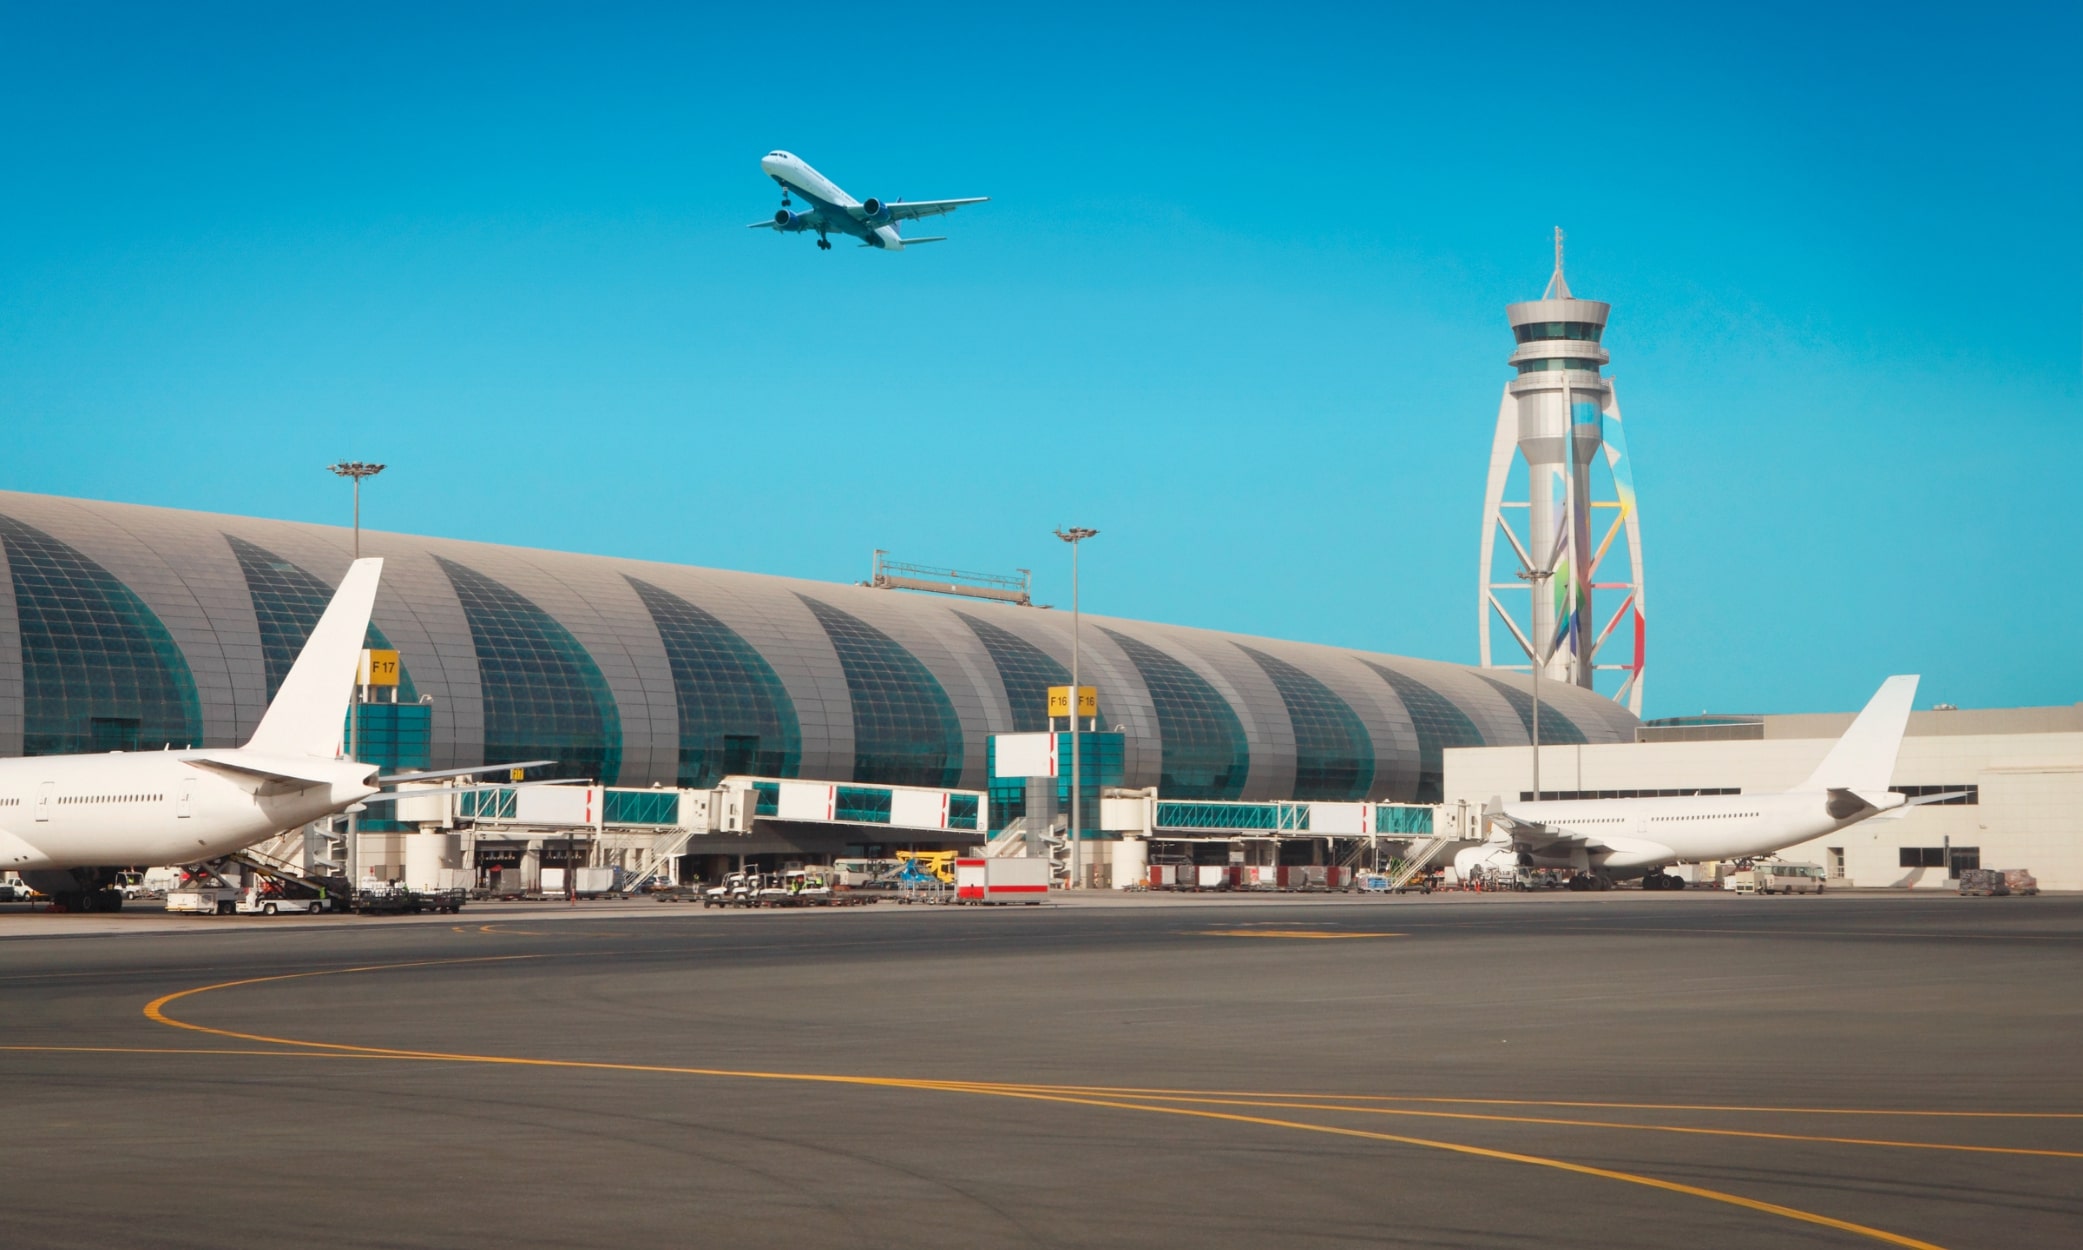 Bạn sẽ đến những điểm đến nào từ Dubai với tư cách cư trú tại UAE?